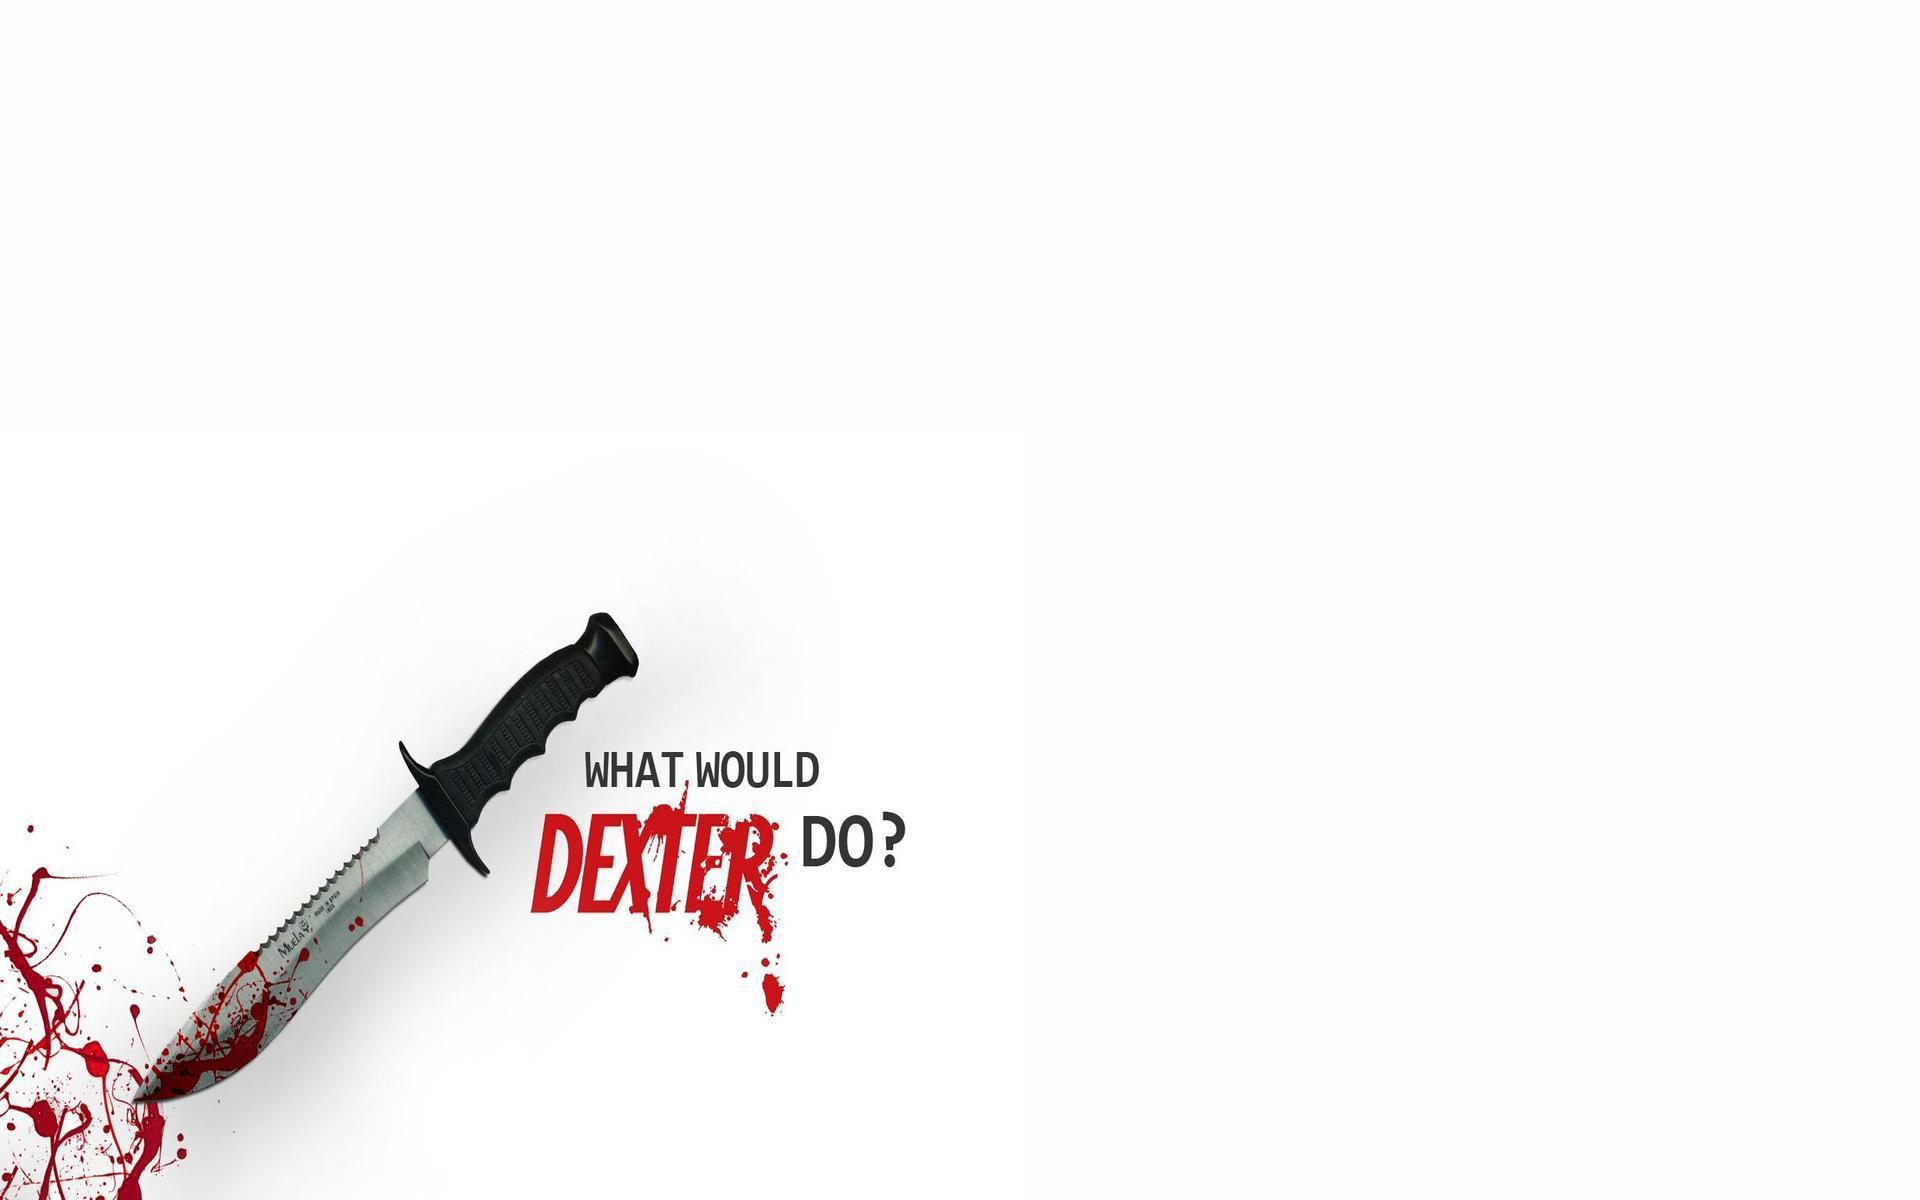 dexter (tv show), tv show, dexter, blood, knife, white